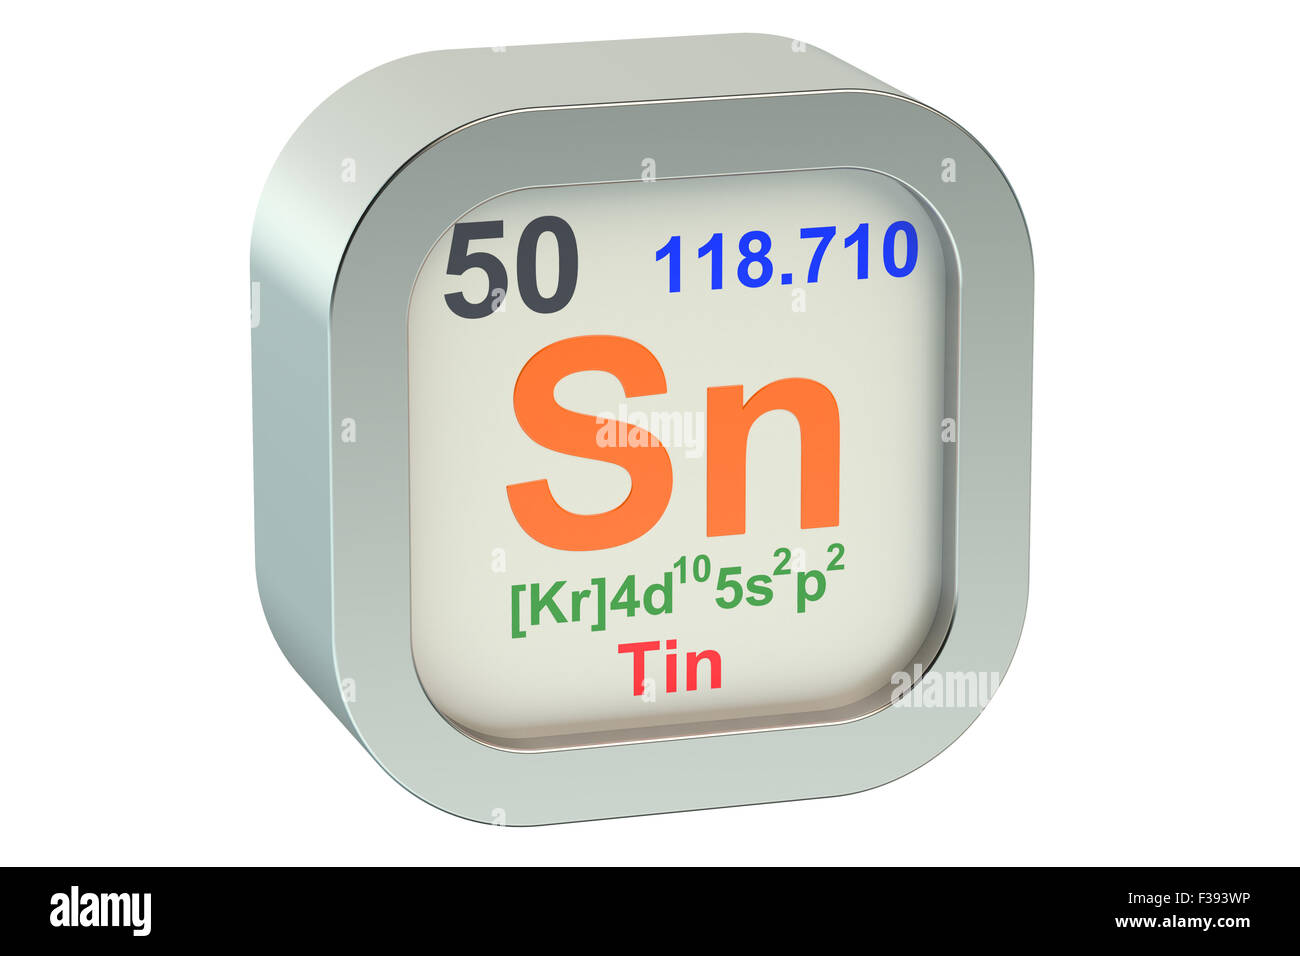 Tin element symbol  isolated on white background Stock Photo